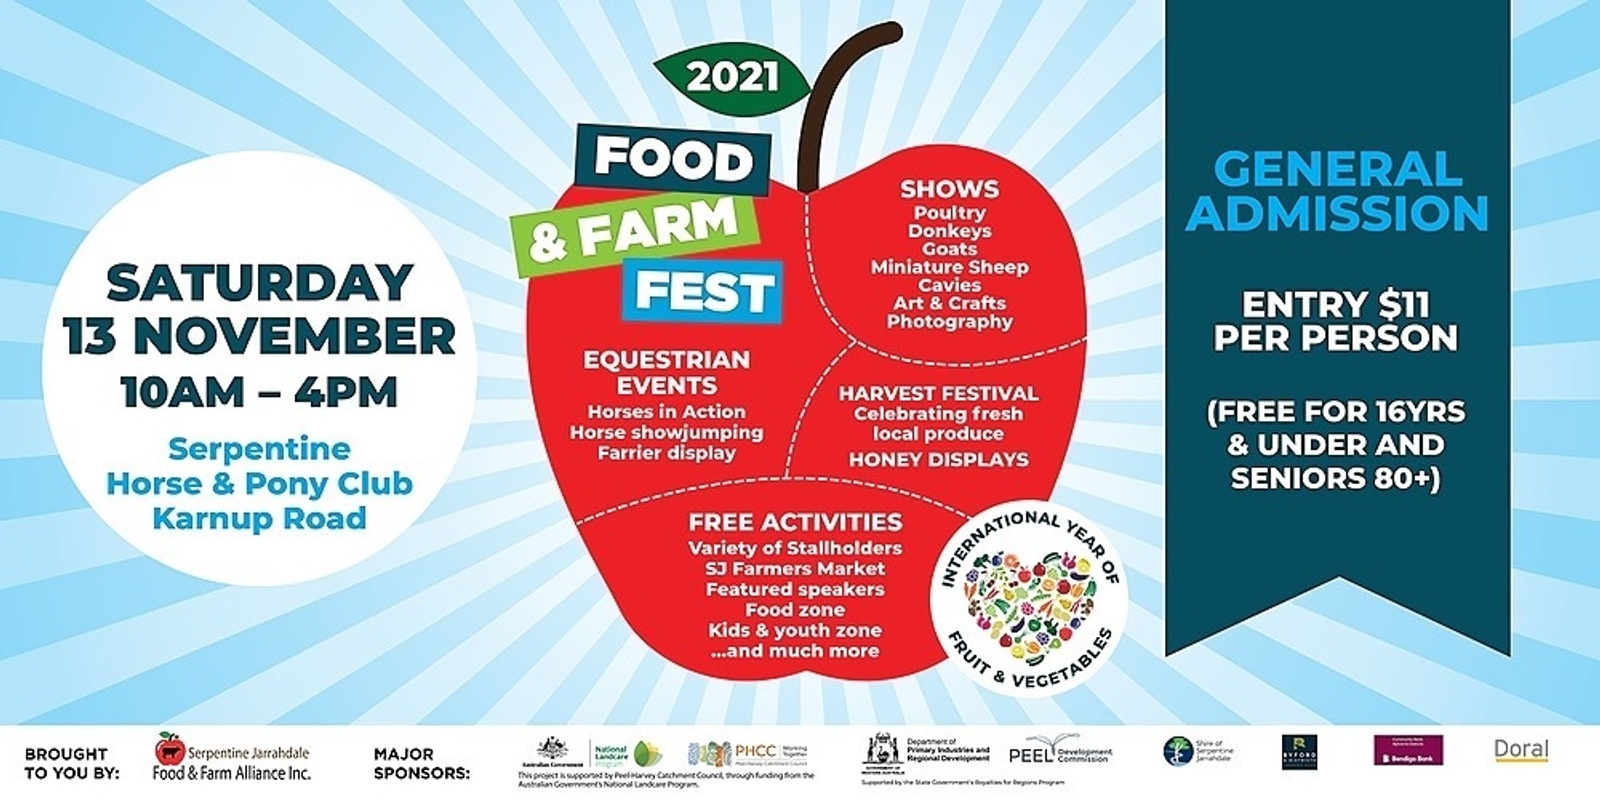 Banner image for SJ Food & Farm Fest - General Admission